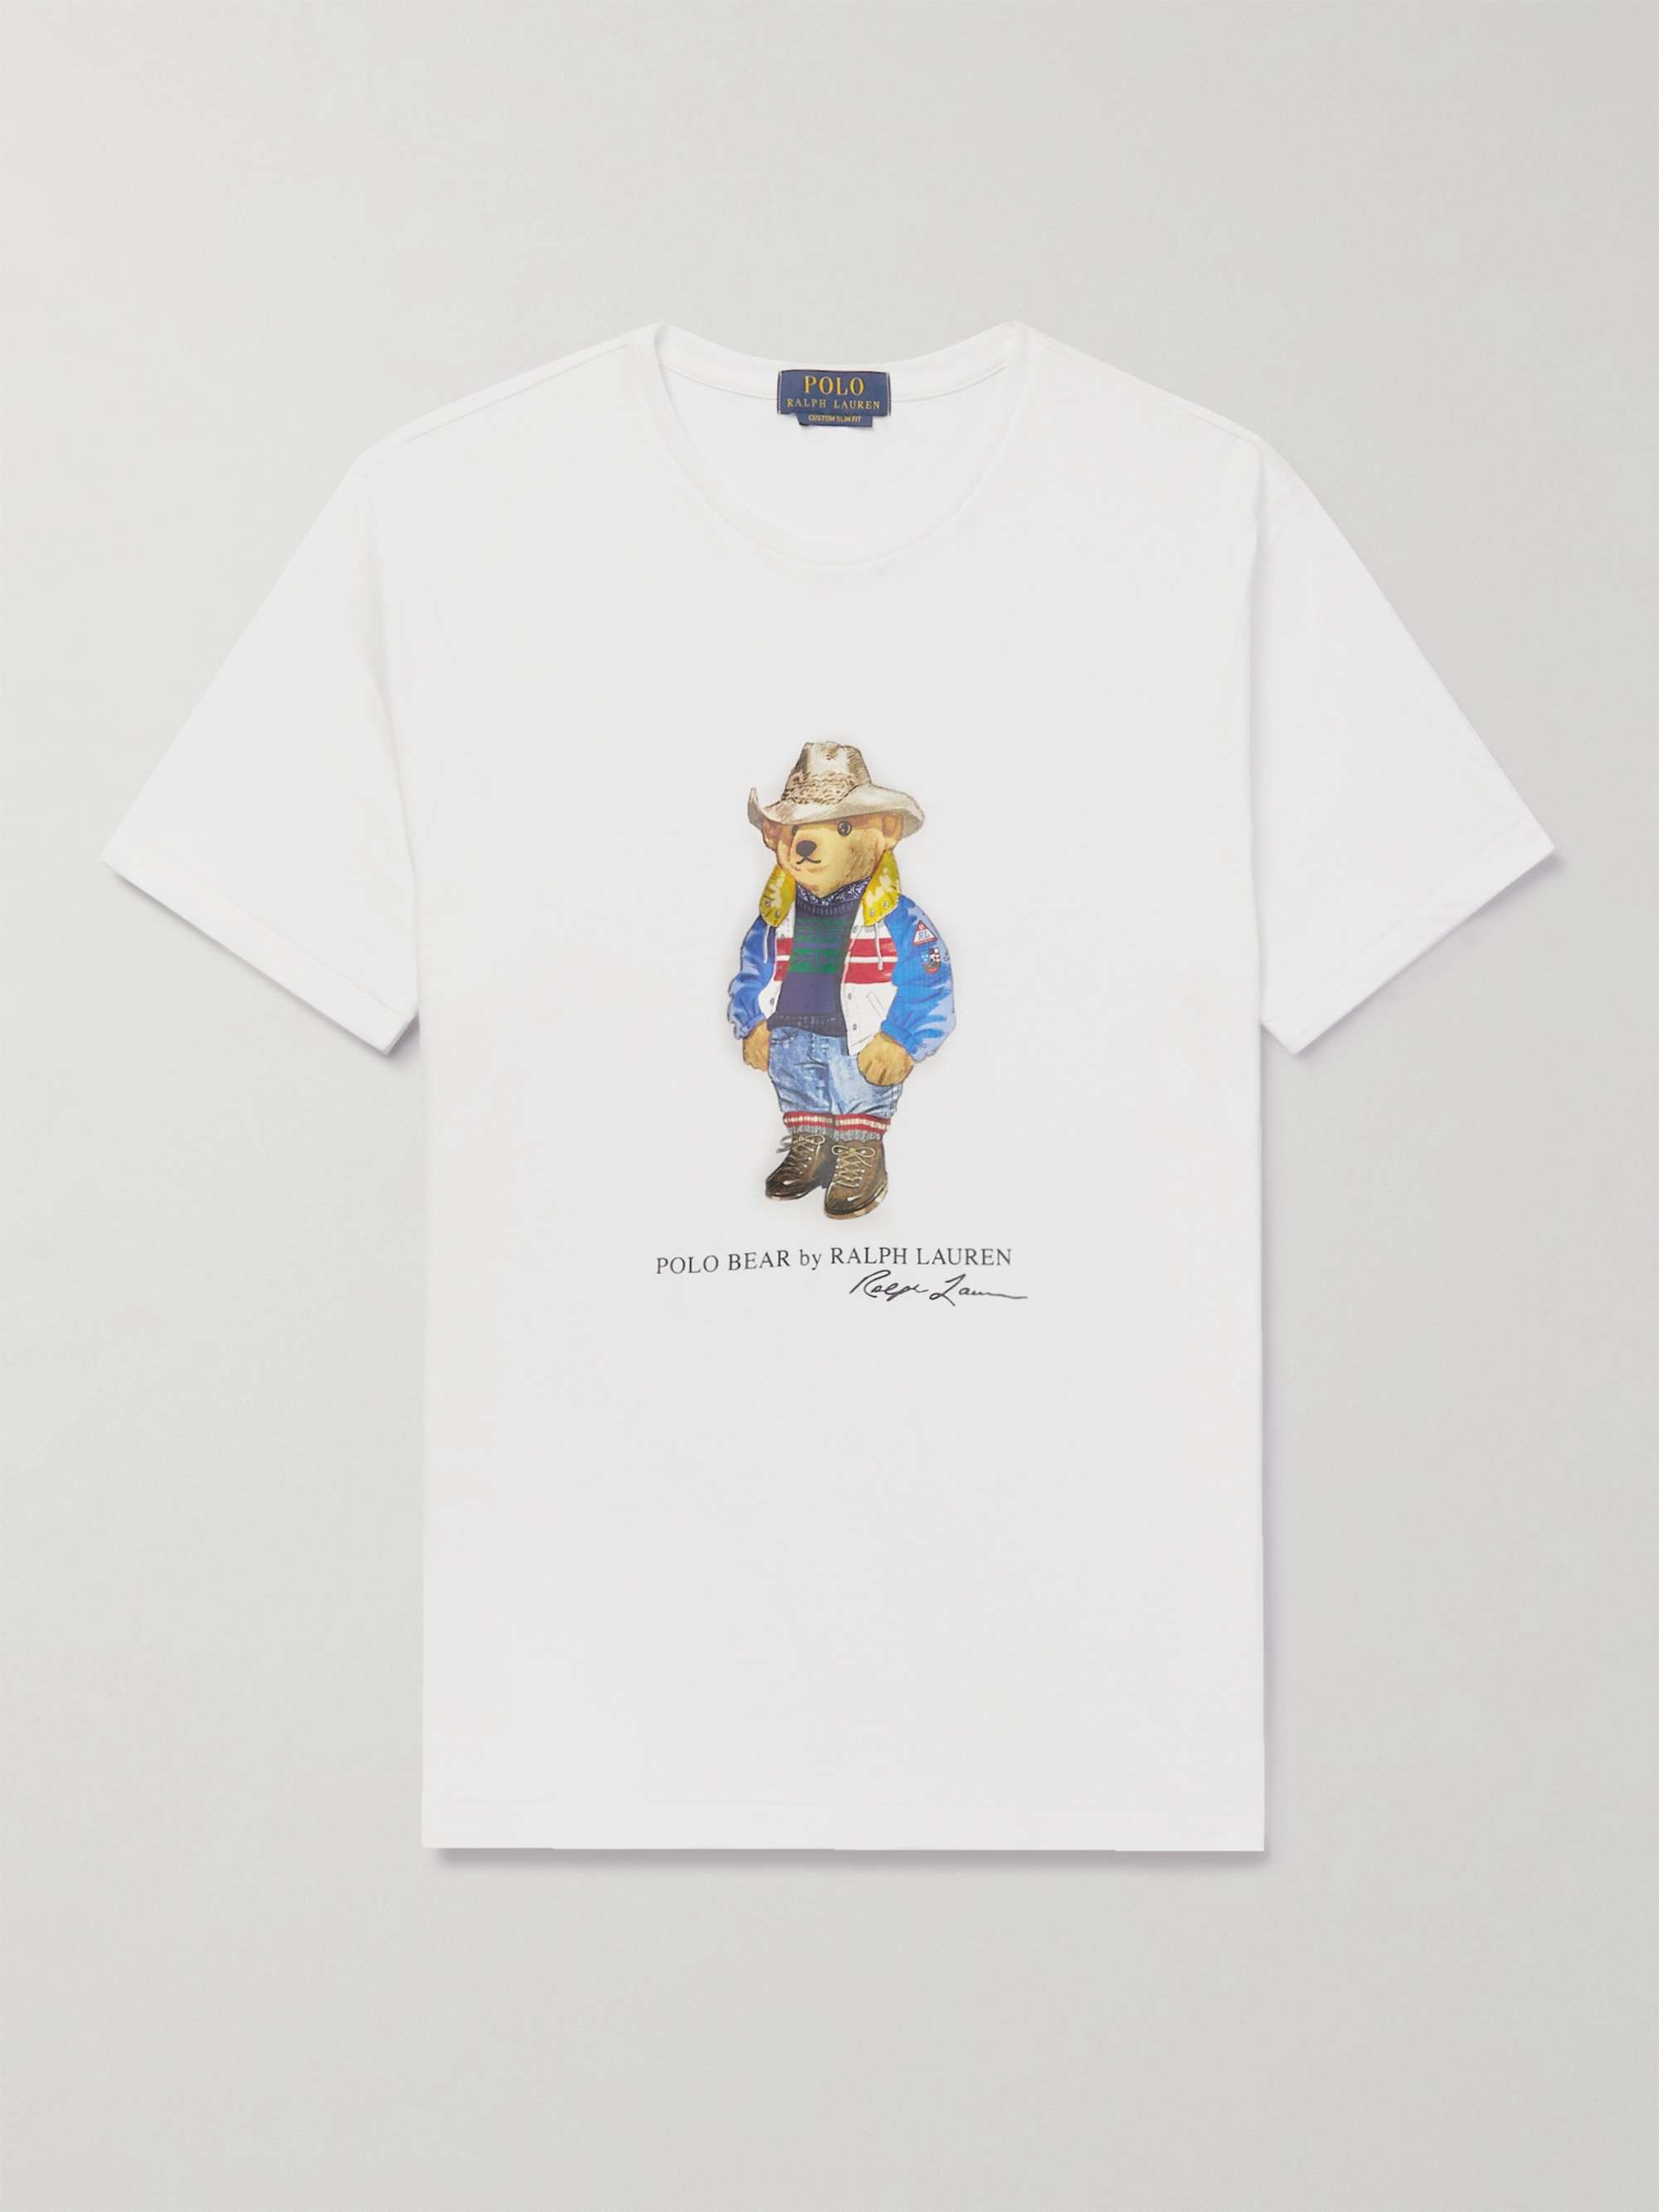 POLO RALPH LAUREN Logo-Print Cotton-Jersey T-Shirt